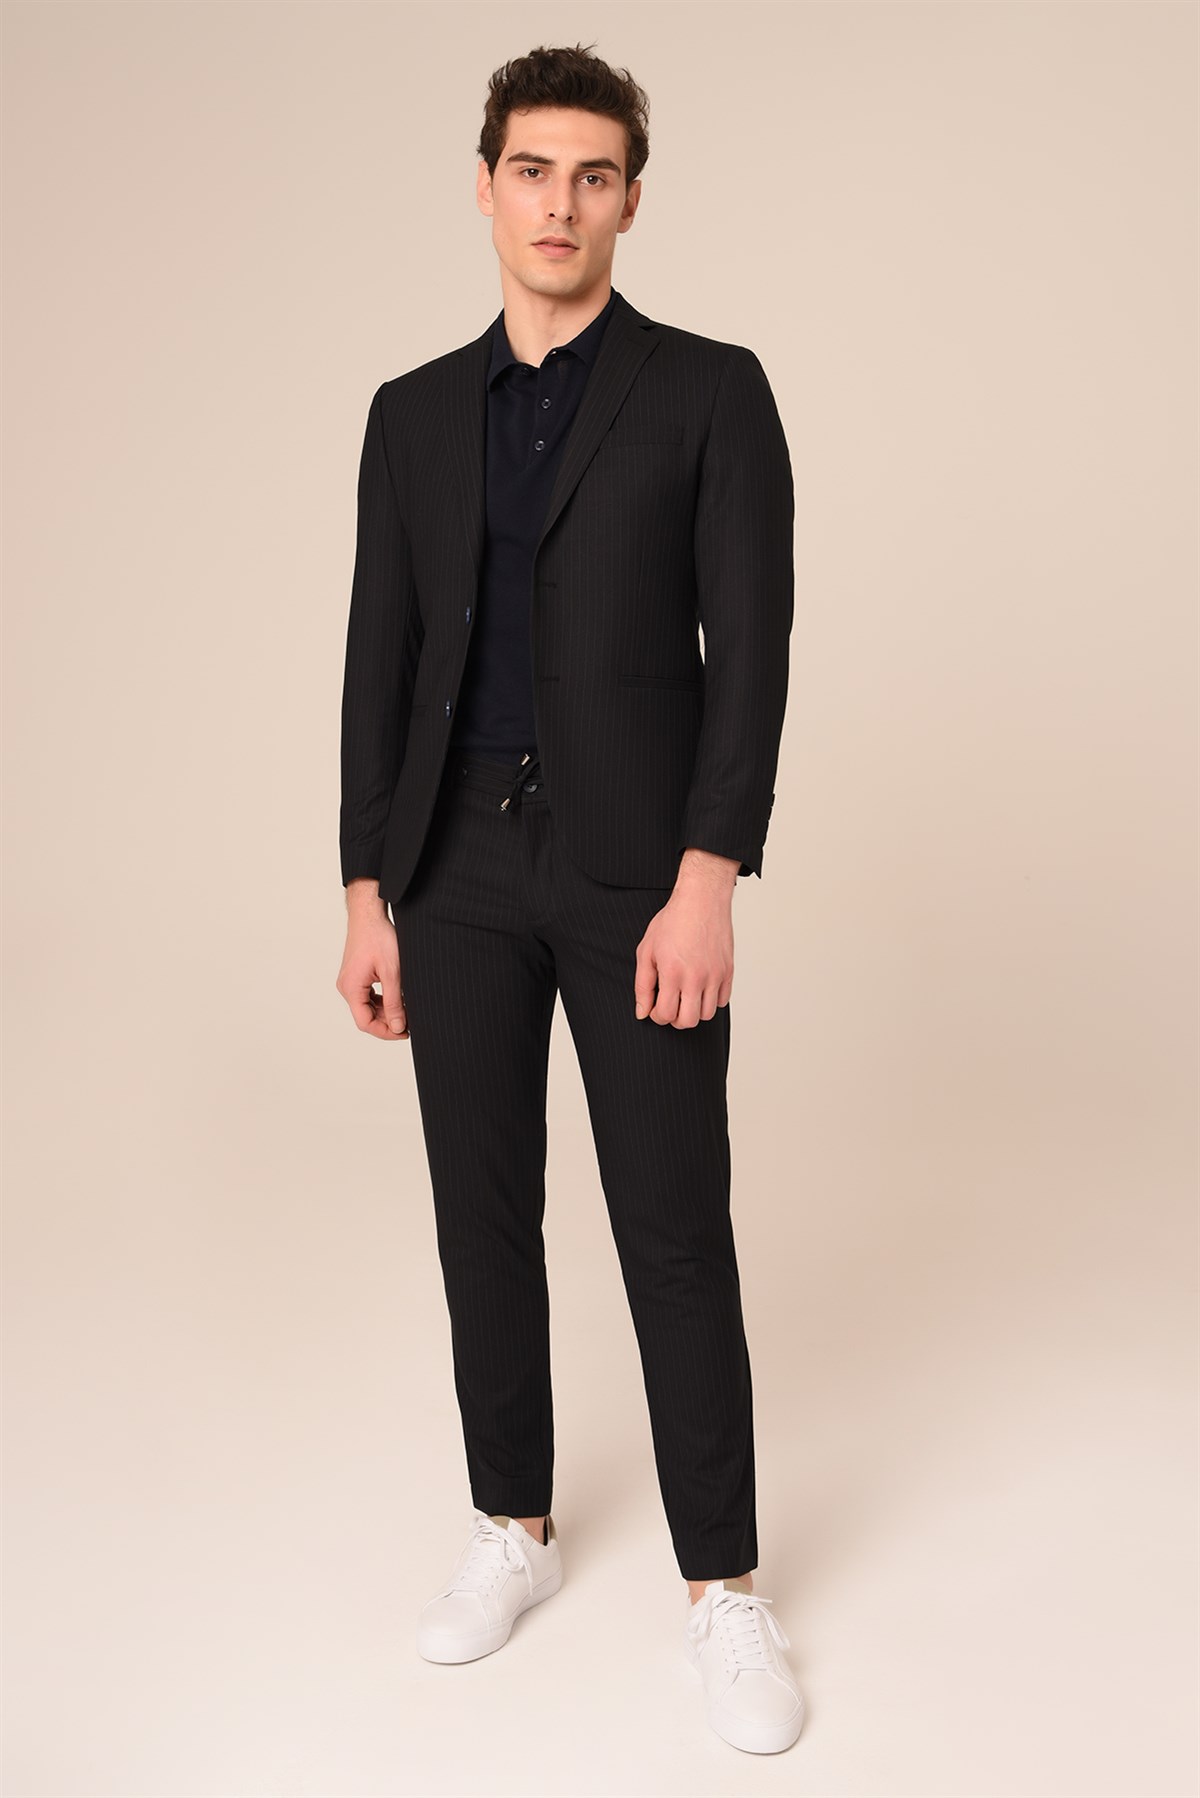 Siyah Renk Çizgili Slim Fit Jogger Pantolonlu Takım Elbise Modelleri ve  Fiyatları | Agustini